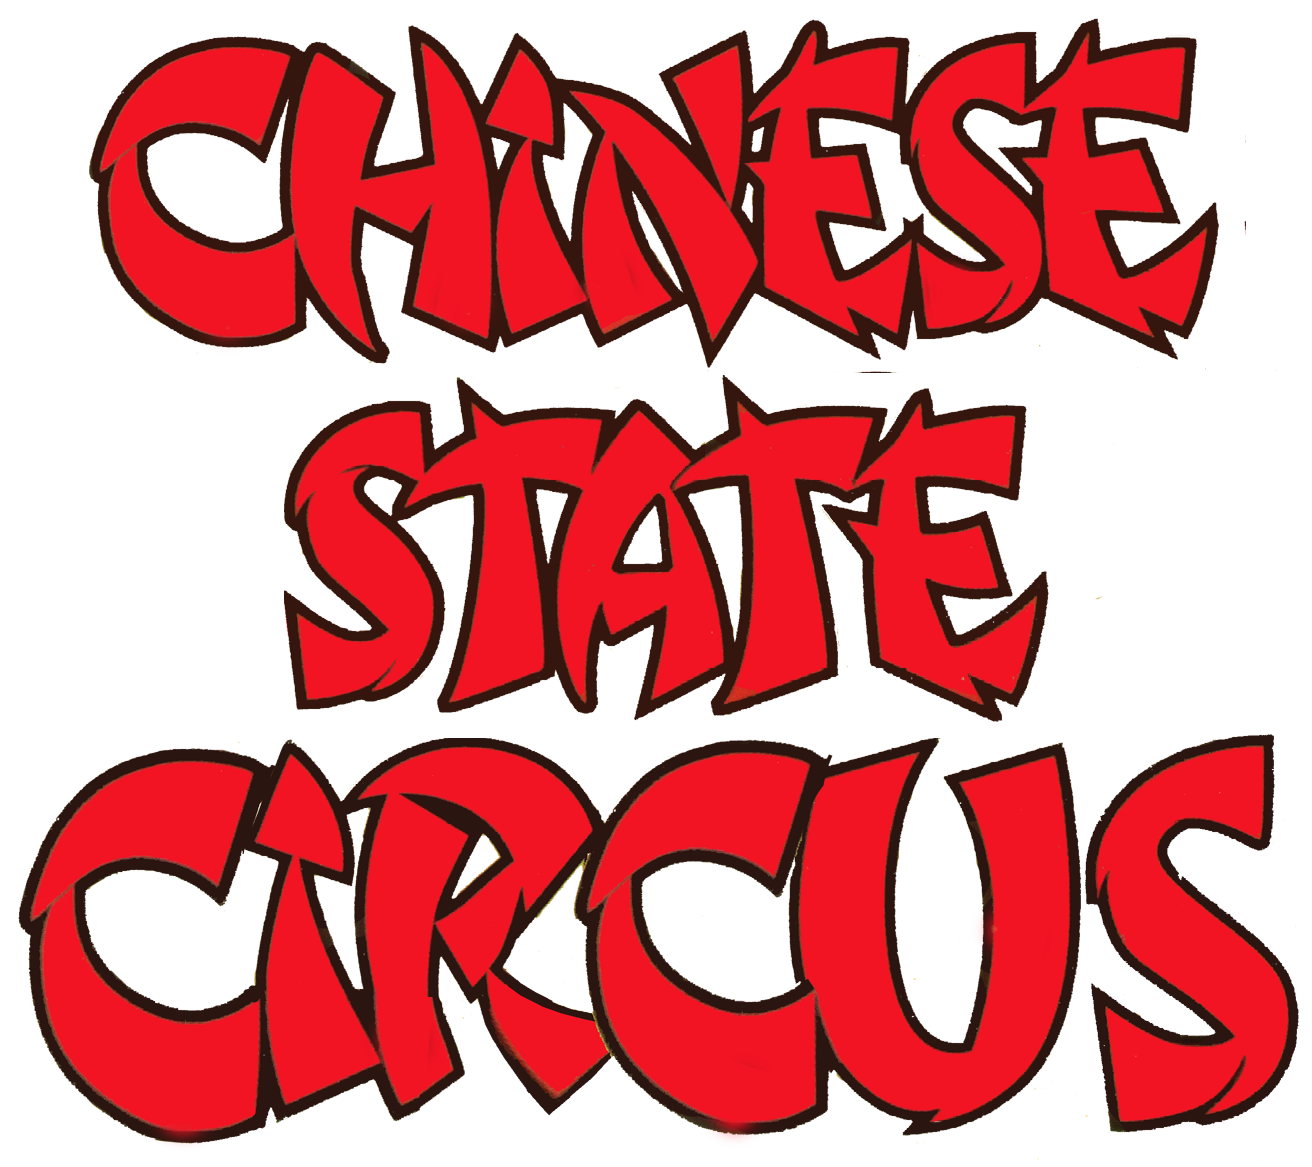 Chinese State Circus